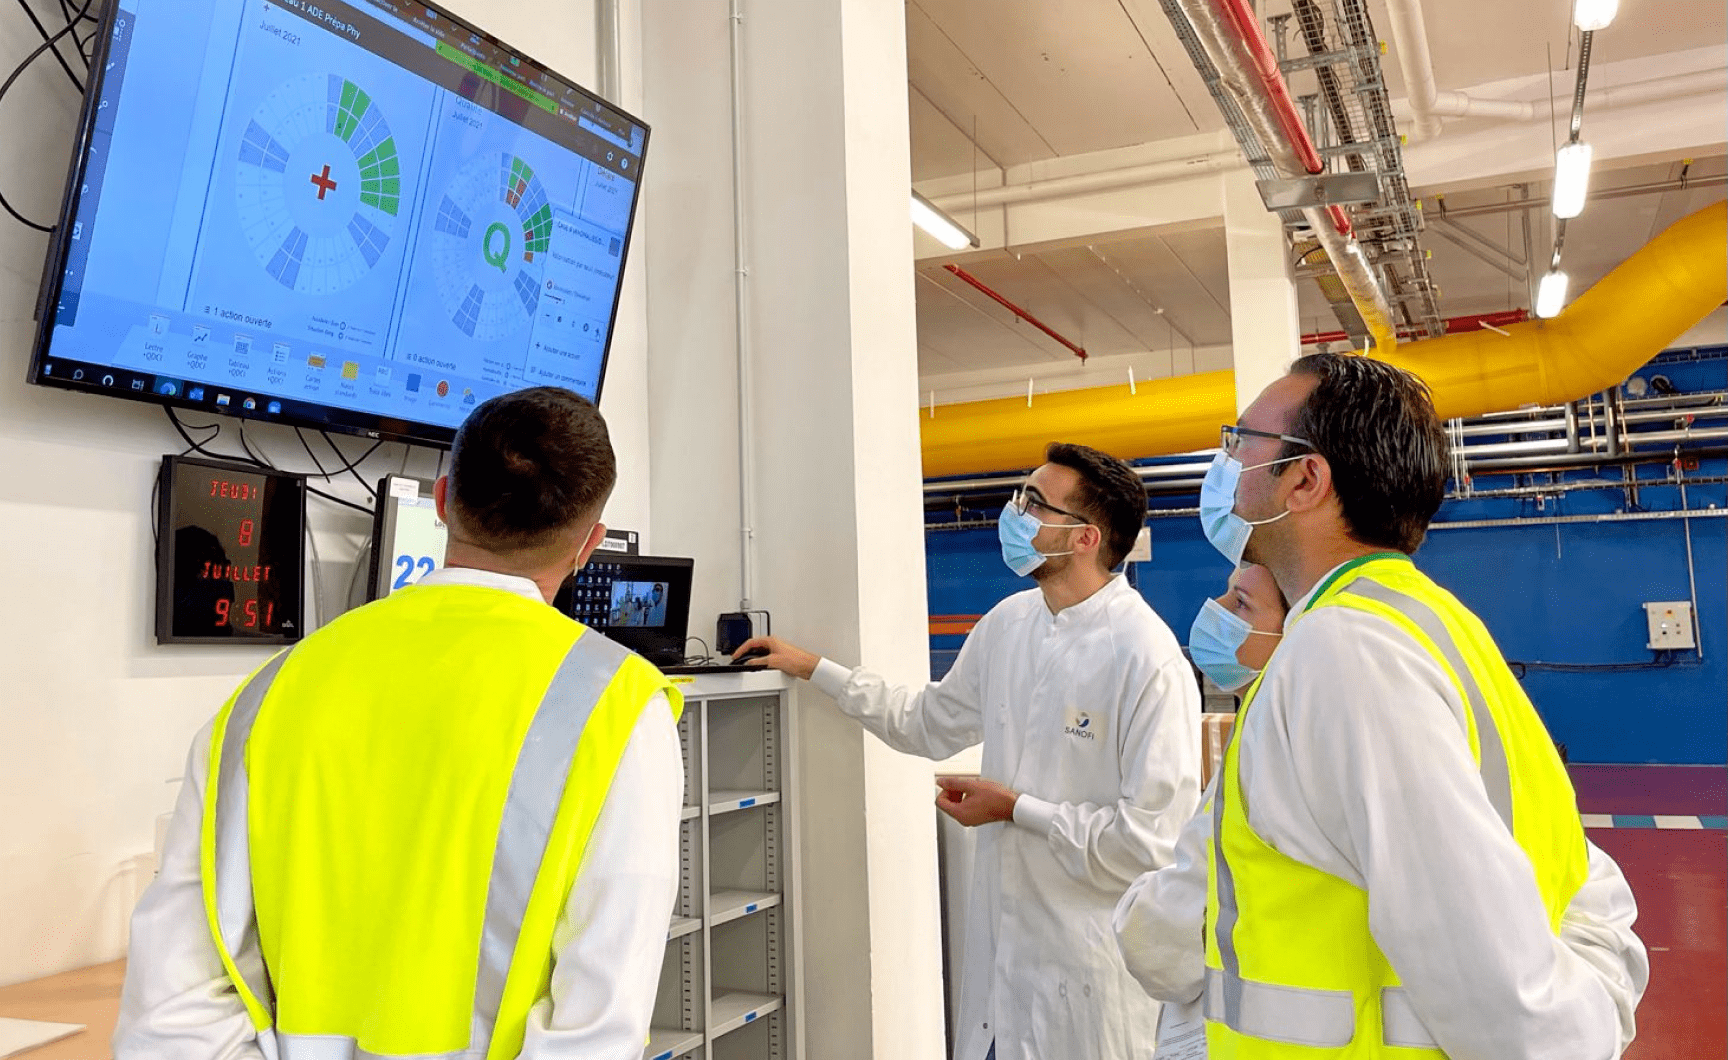 équipe dans une usine métant à jour des lettres SQCD digitalement dans iObeya sur un écran tactile pour une collaboration optimisée.